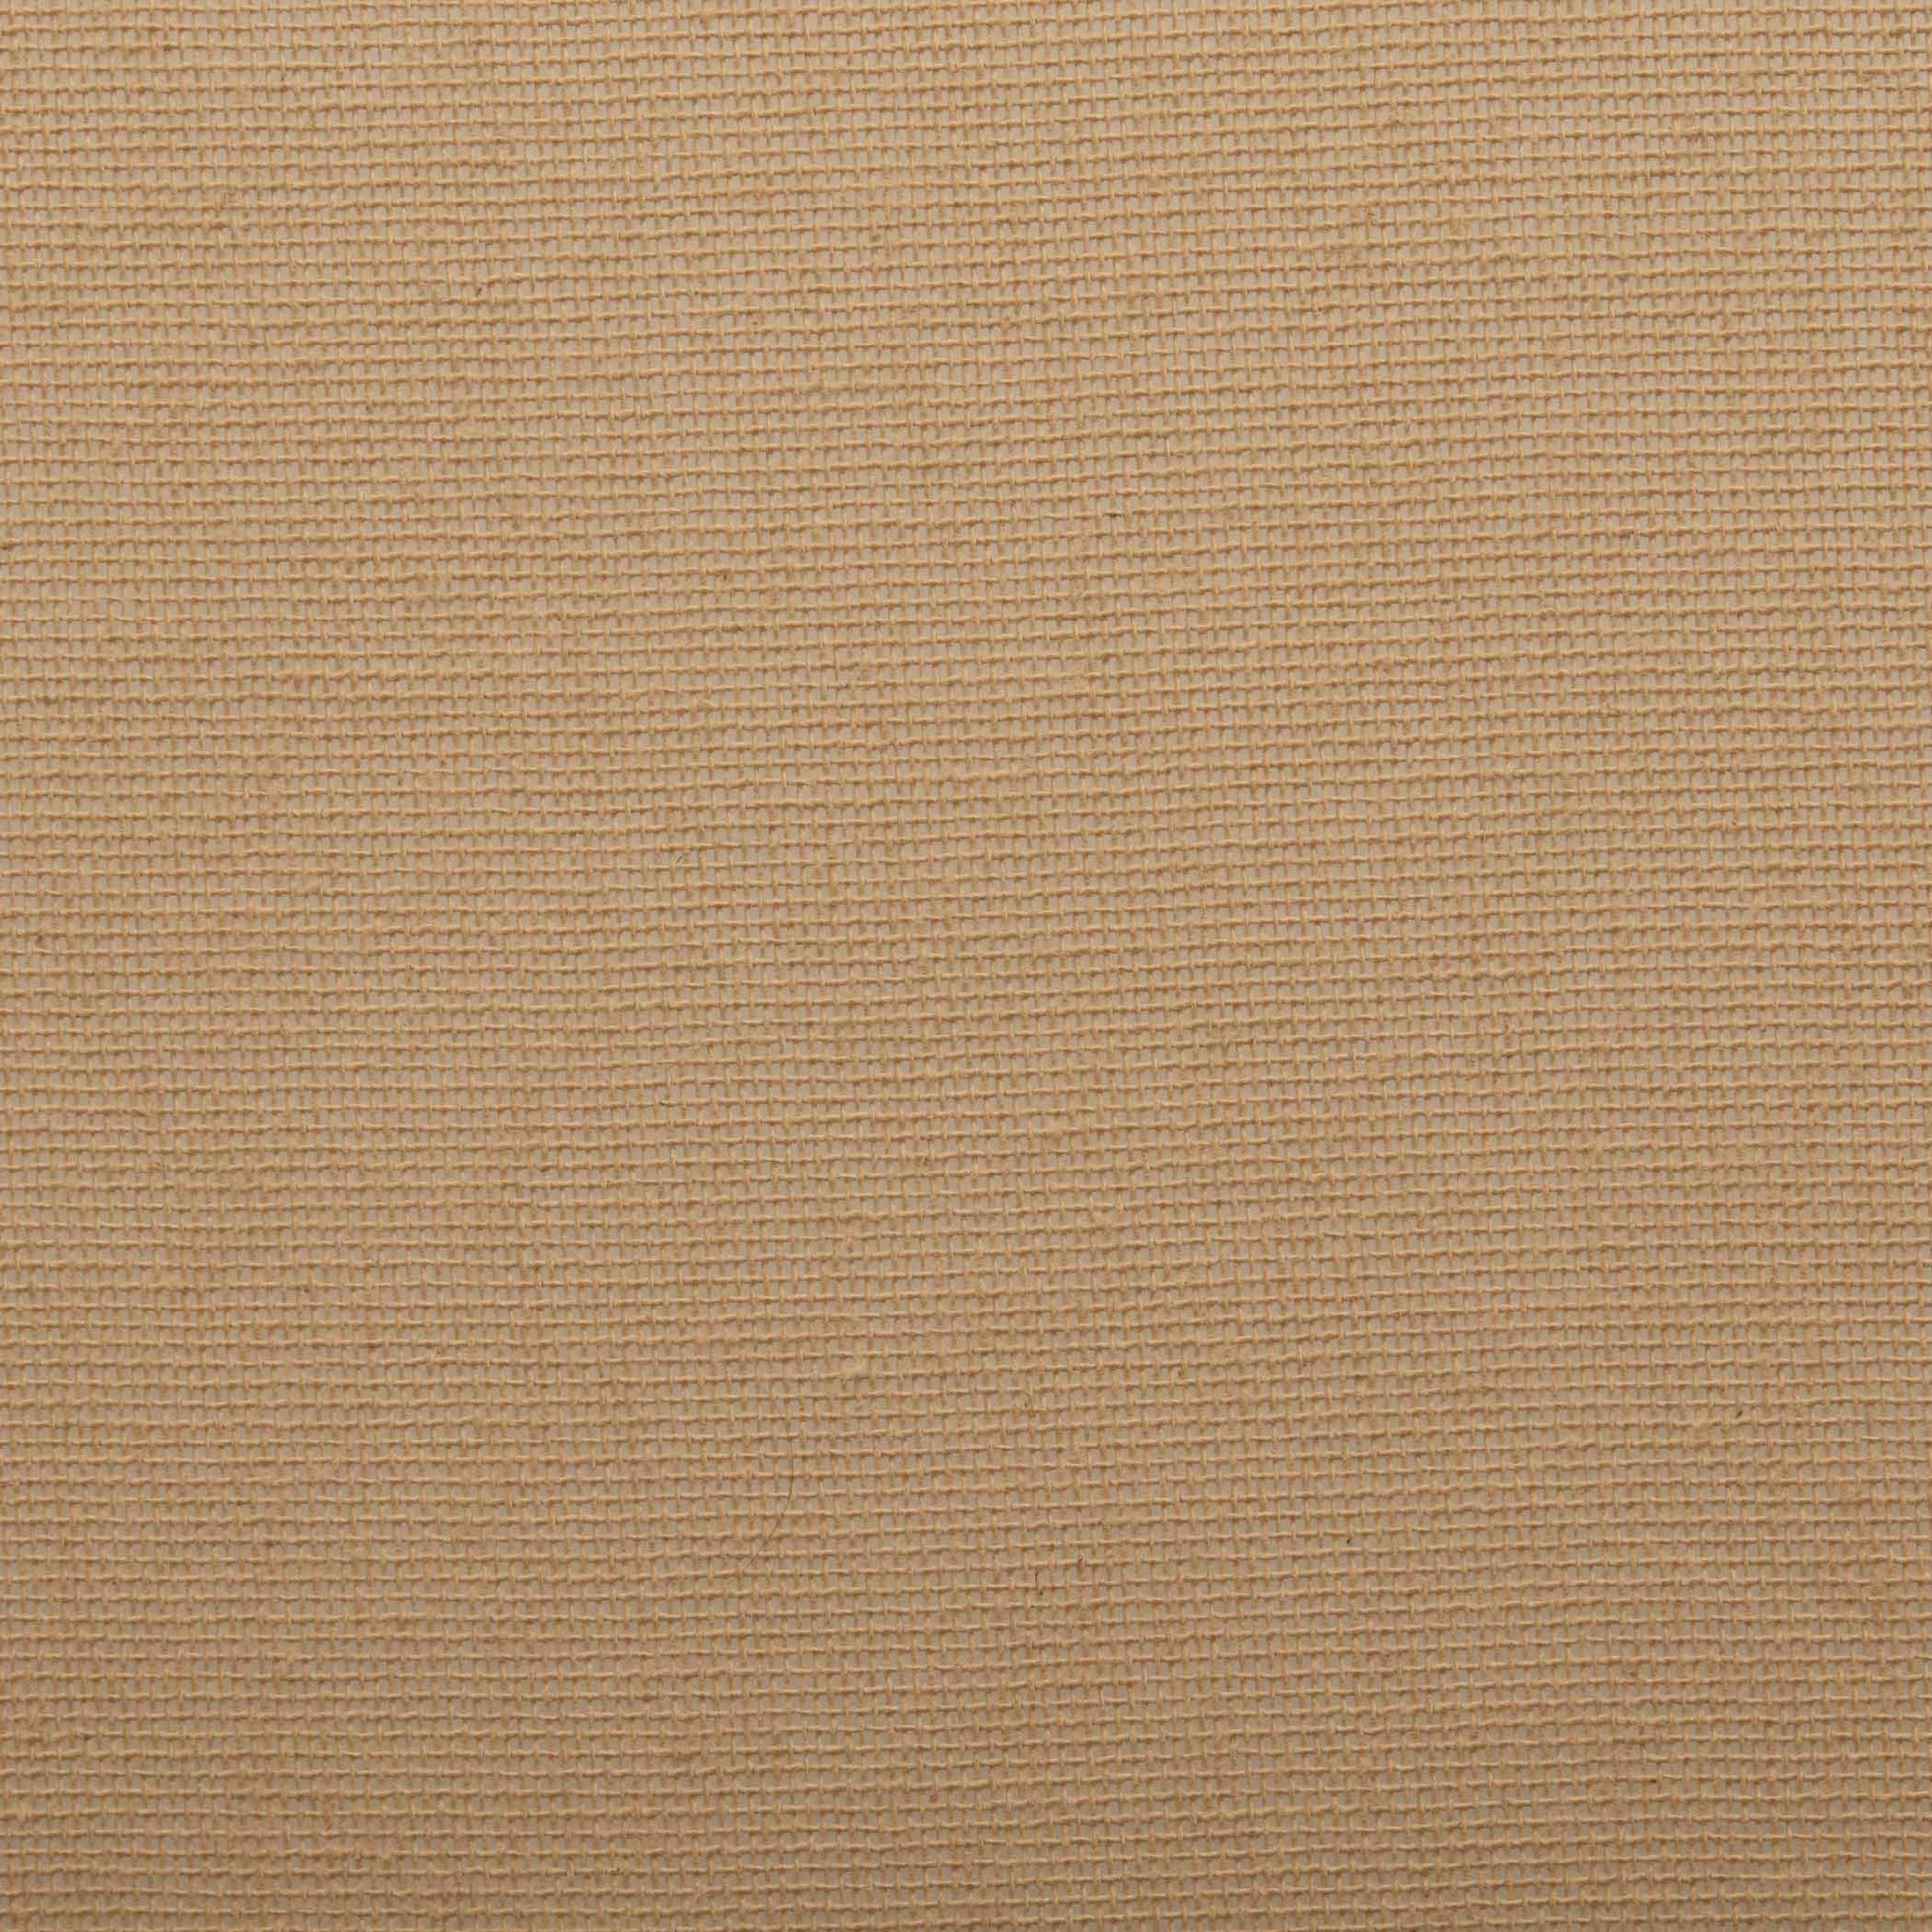 51392-Tobacco-Cloth-Khaki-Short-Panel-Fringed-Set-of-2-63x36-image-8